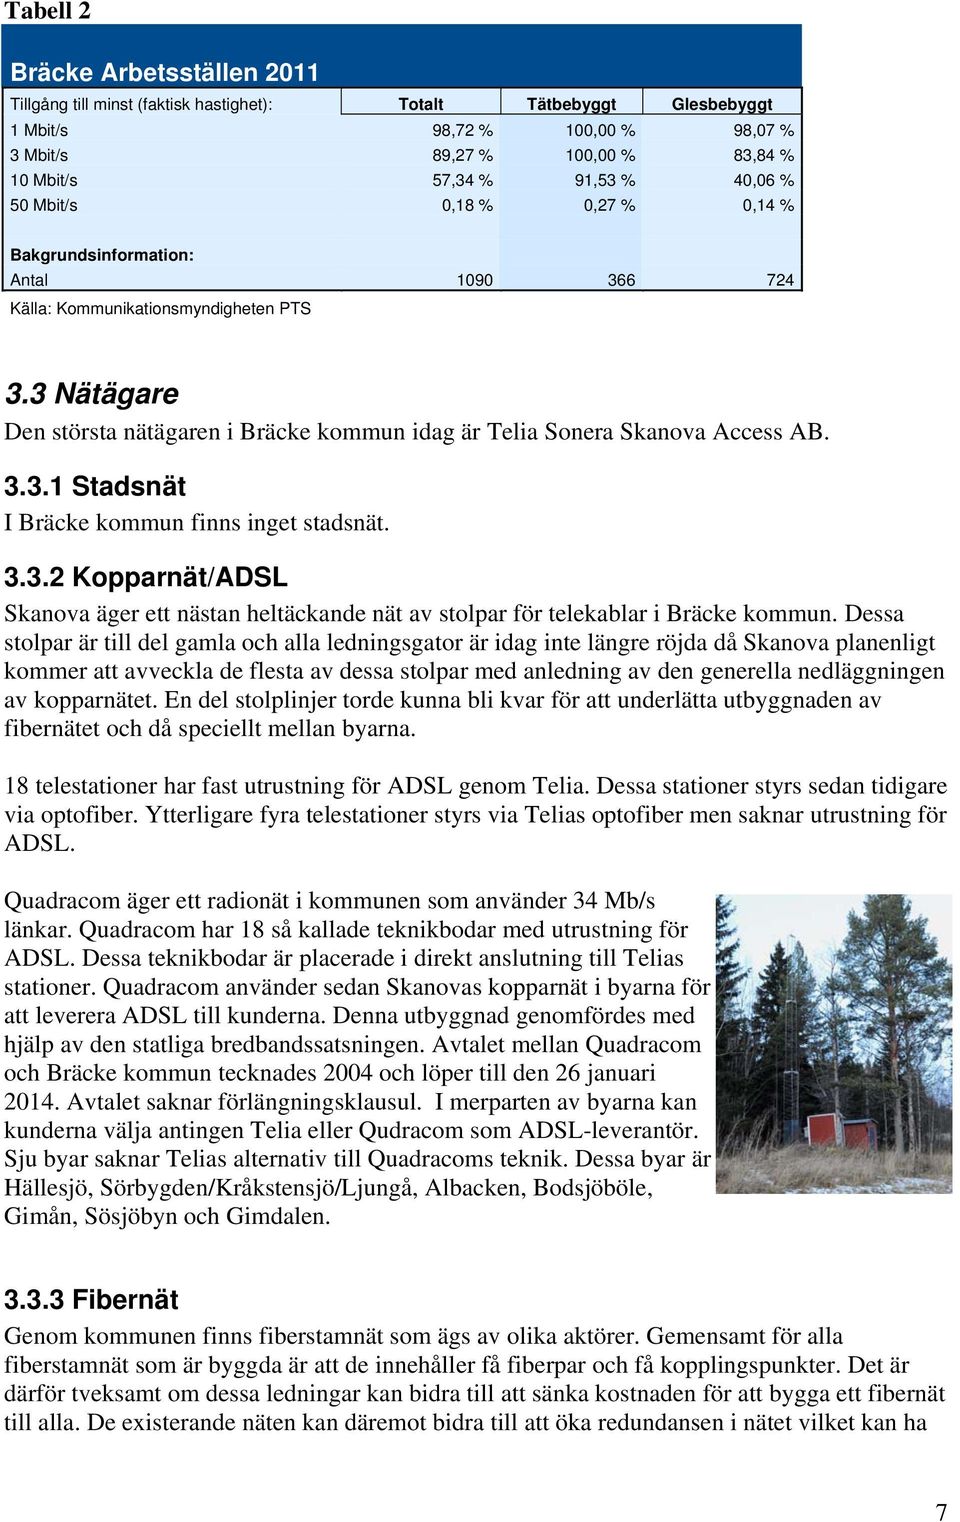 3 Nätägare Den största nätägaren i Bräcke kommun idag är Telia Sonera Skanova Access AB. 3.3.1 Stadsnät I Bräcke kommun finns inget stadsnät. 3.3.2 Kopparnät/ADSL Skanova äger ett nästan heltäckande nät av stolpar för telekablar i Bräcke kommun.